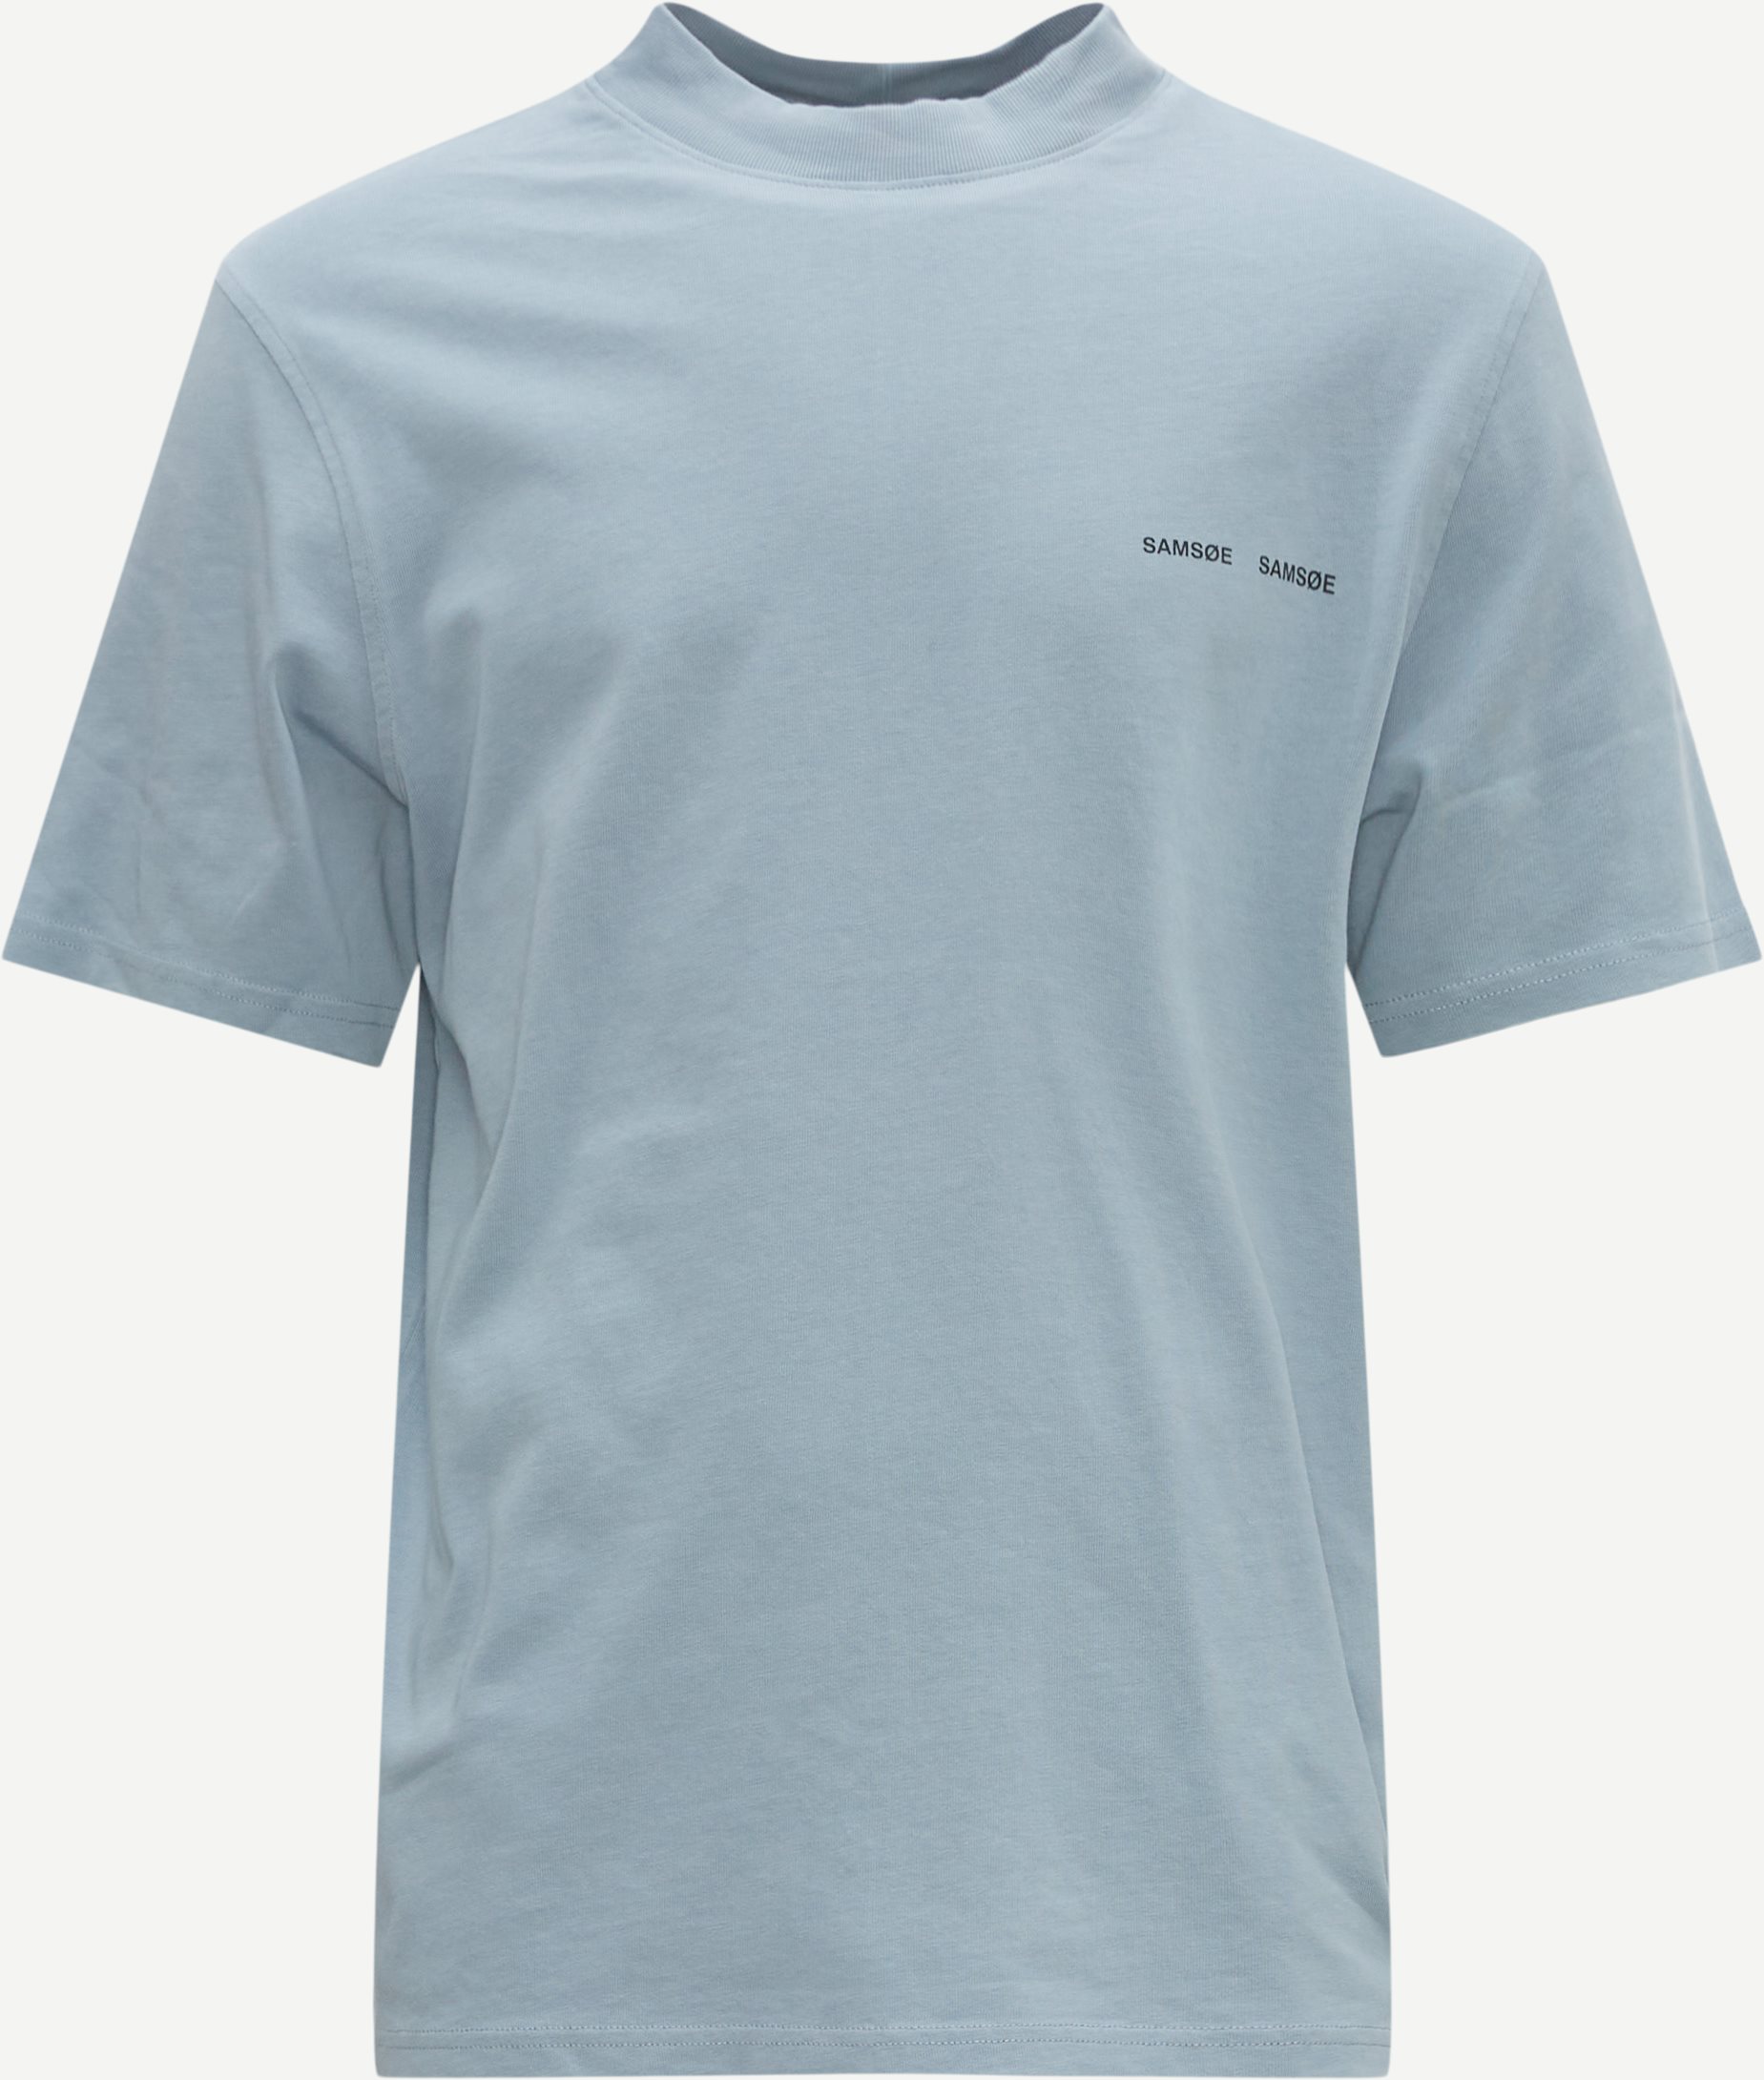 Samsøe Samsøe T-shirts NORSBRO T-SHIRT 6024 Blå